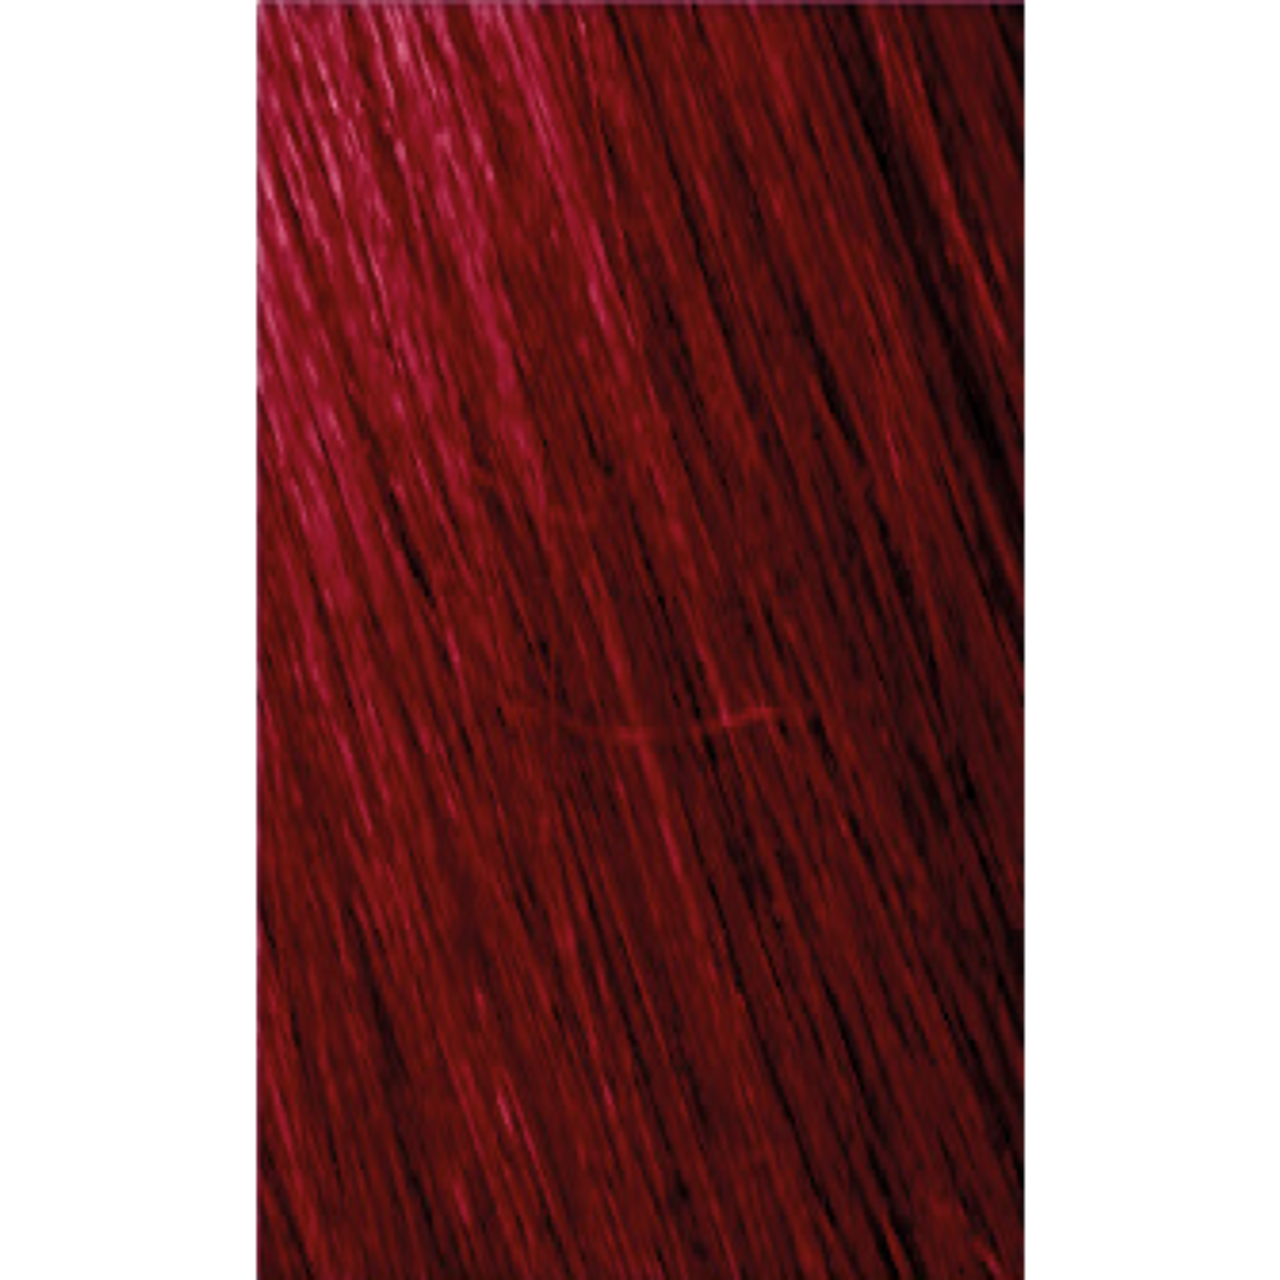 Megix10 5.62 Light Red Iris Brown 100ml | Beauty Solutions, LLC